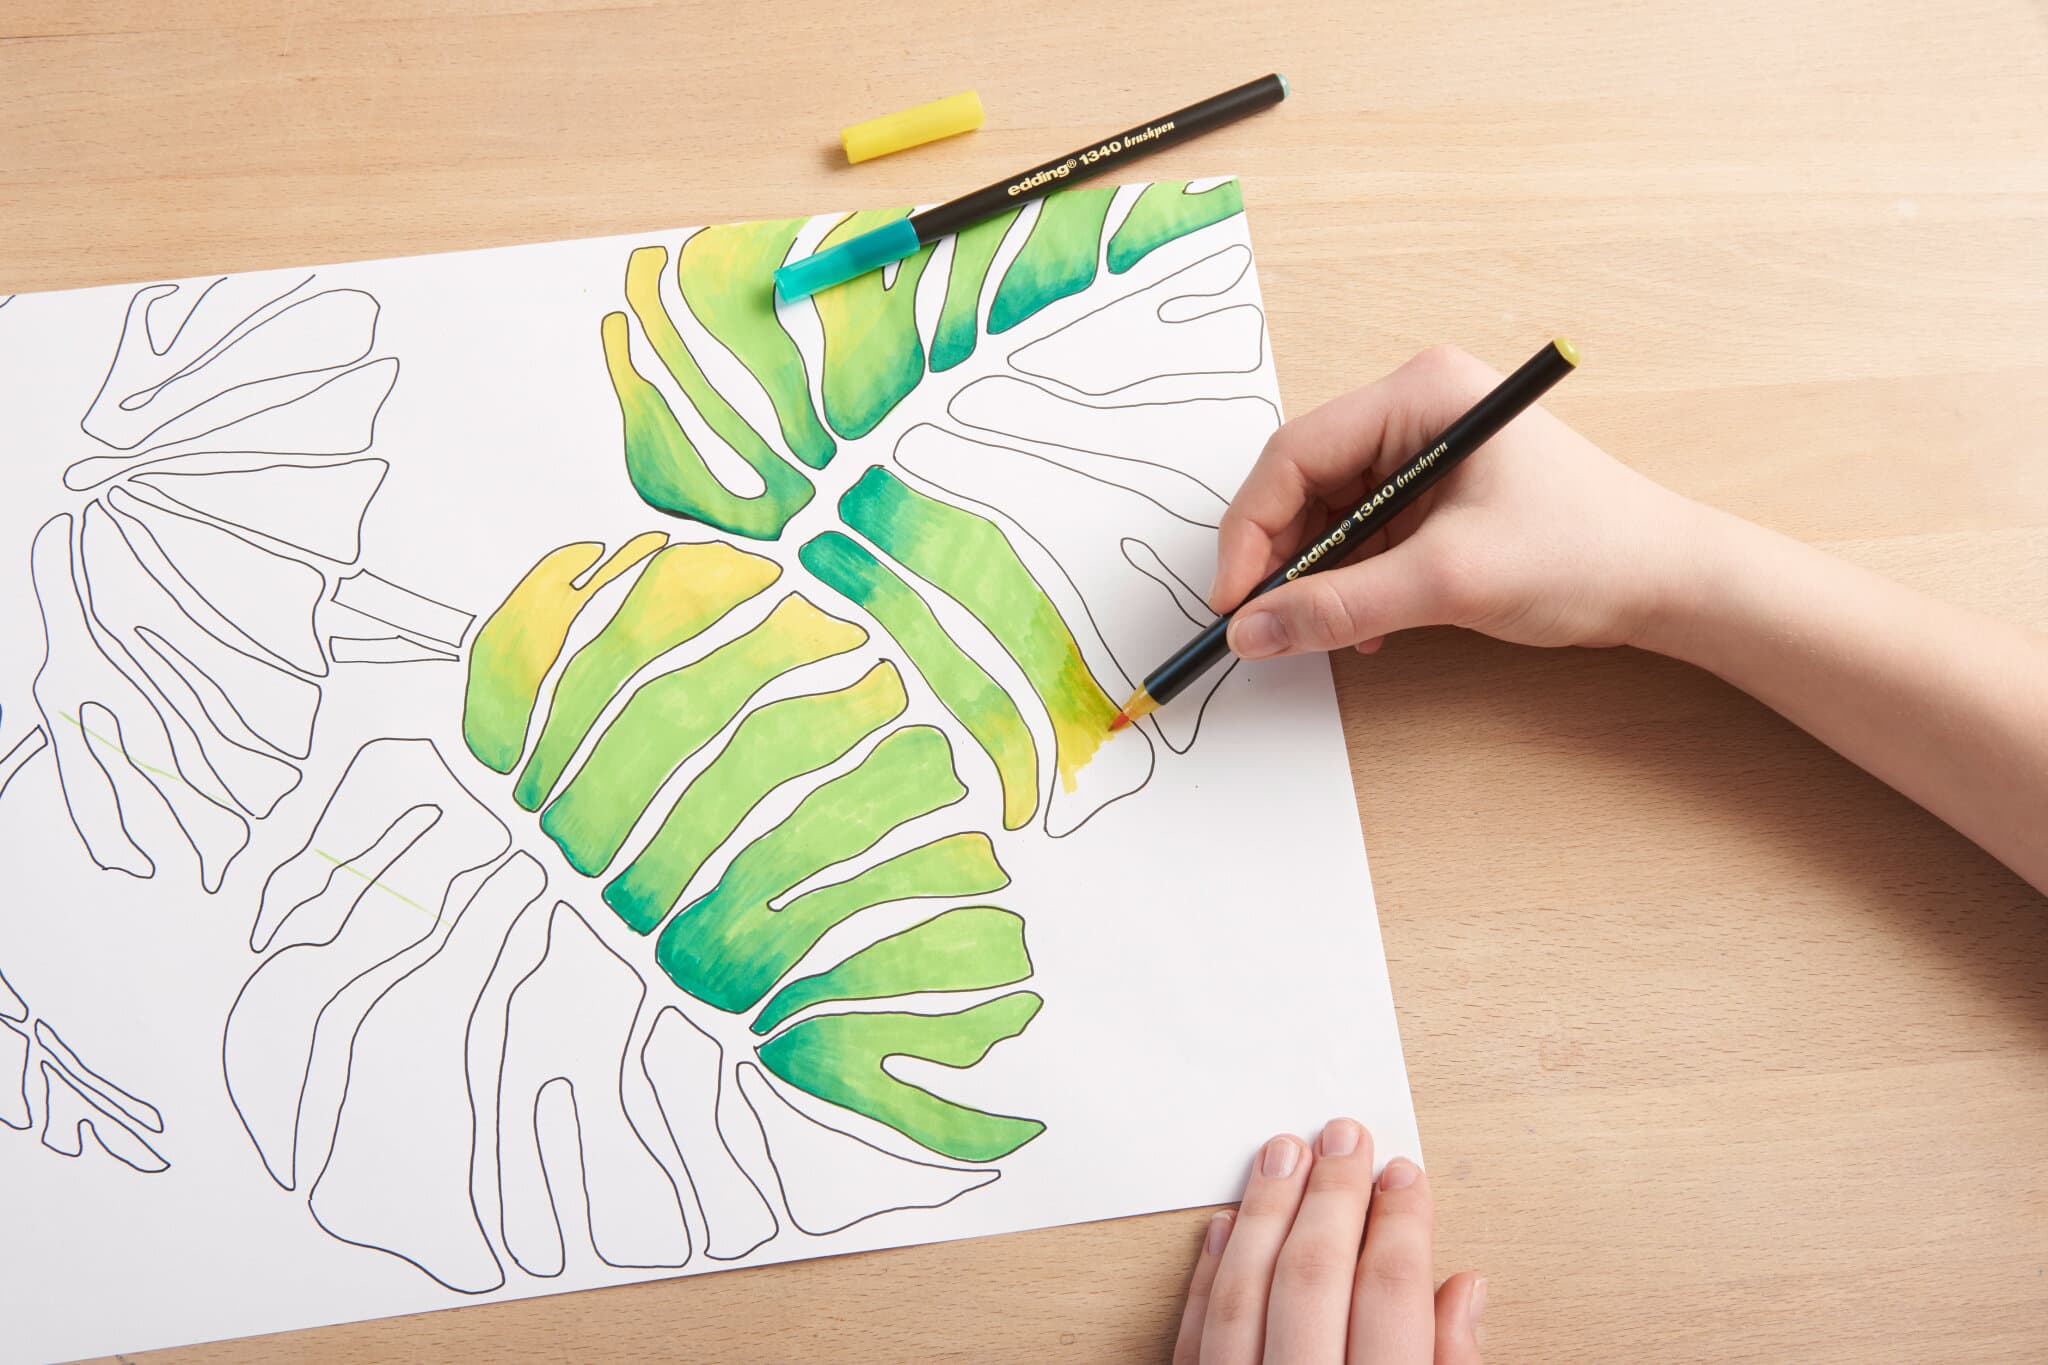 Anwendungsbild von edding 1340 Pinselstift Blätter Bild ausmalen Farbverlauf